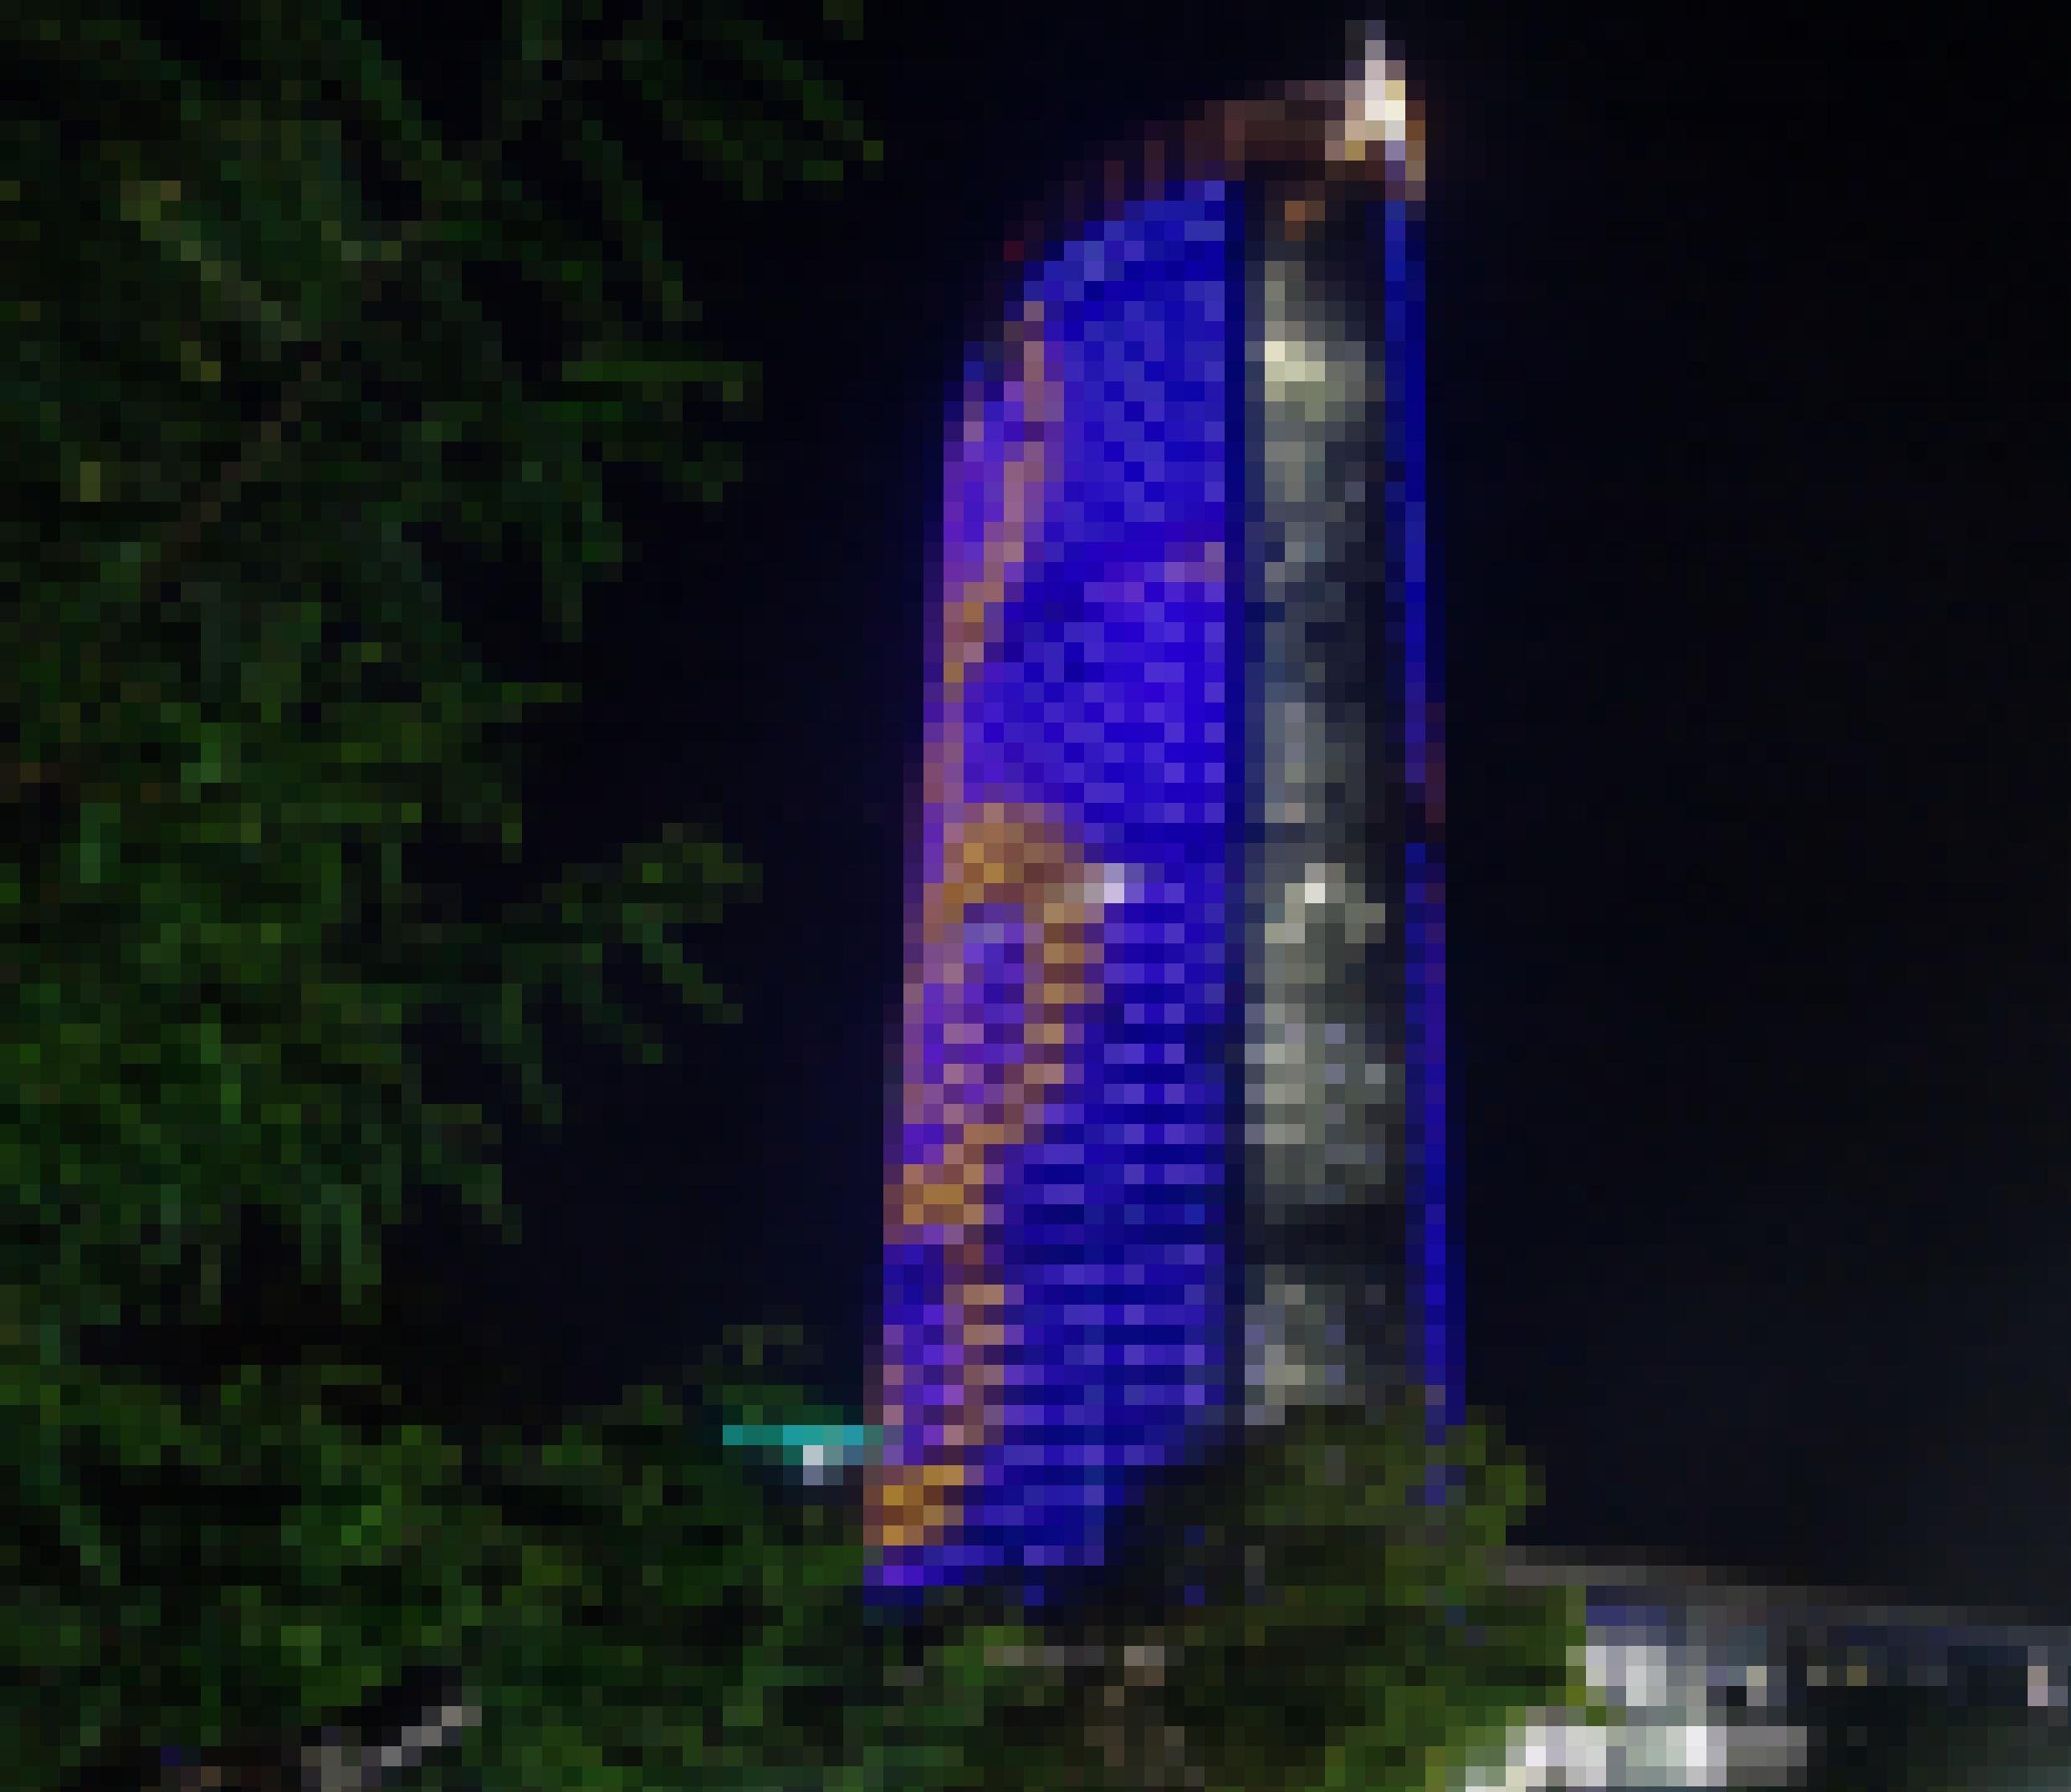 Der Post-Tower bei Nacht: Die Fenster auf der gesamten Fassade sind blau und gelb beleuchtet. Sie ergeben einen gelben Violinschlüssel auf blauem Grund.